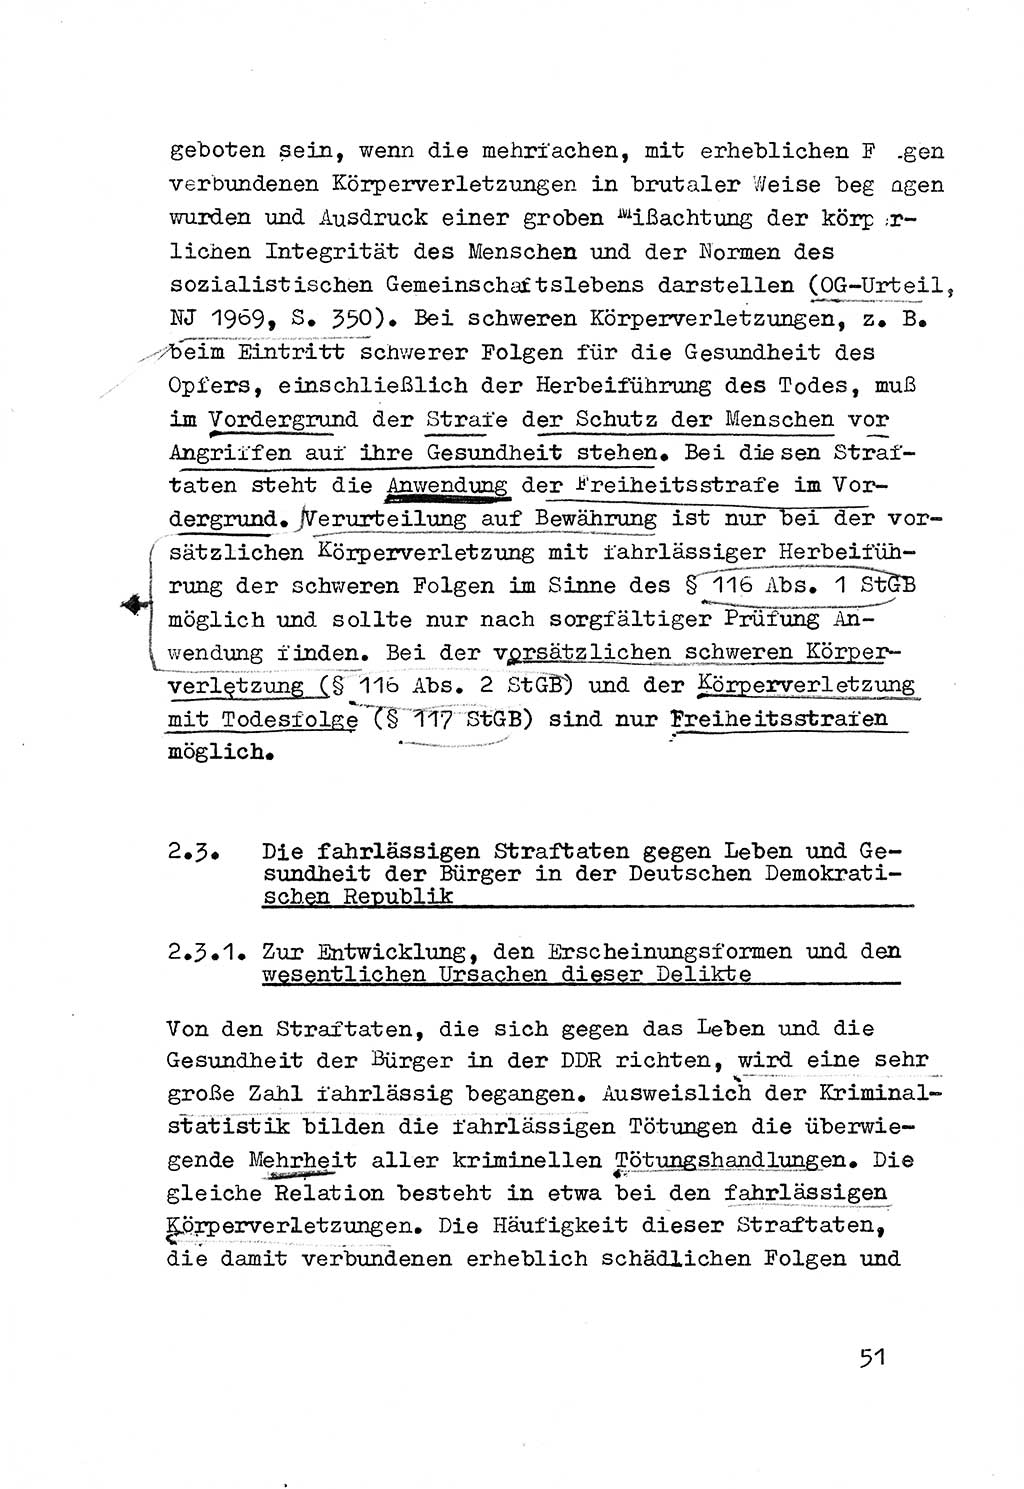 Strafrecht der DDR (Deutsche Demokratische Republik), Besonderer Teil, Lehrmaterial, Heft 3 1969, Seite 51 (Strafr. DDR BT Lehrmat. H. 3 1969, S. 51)